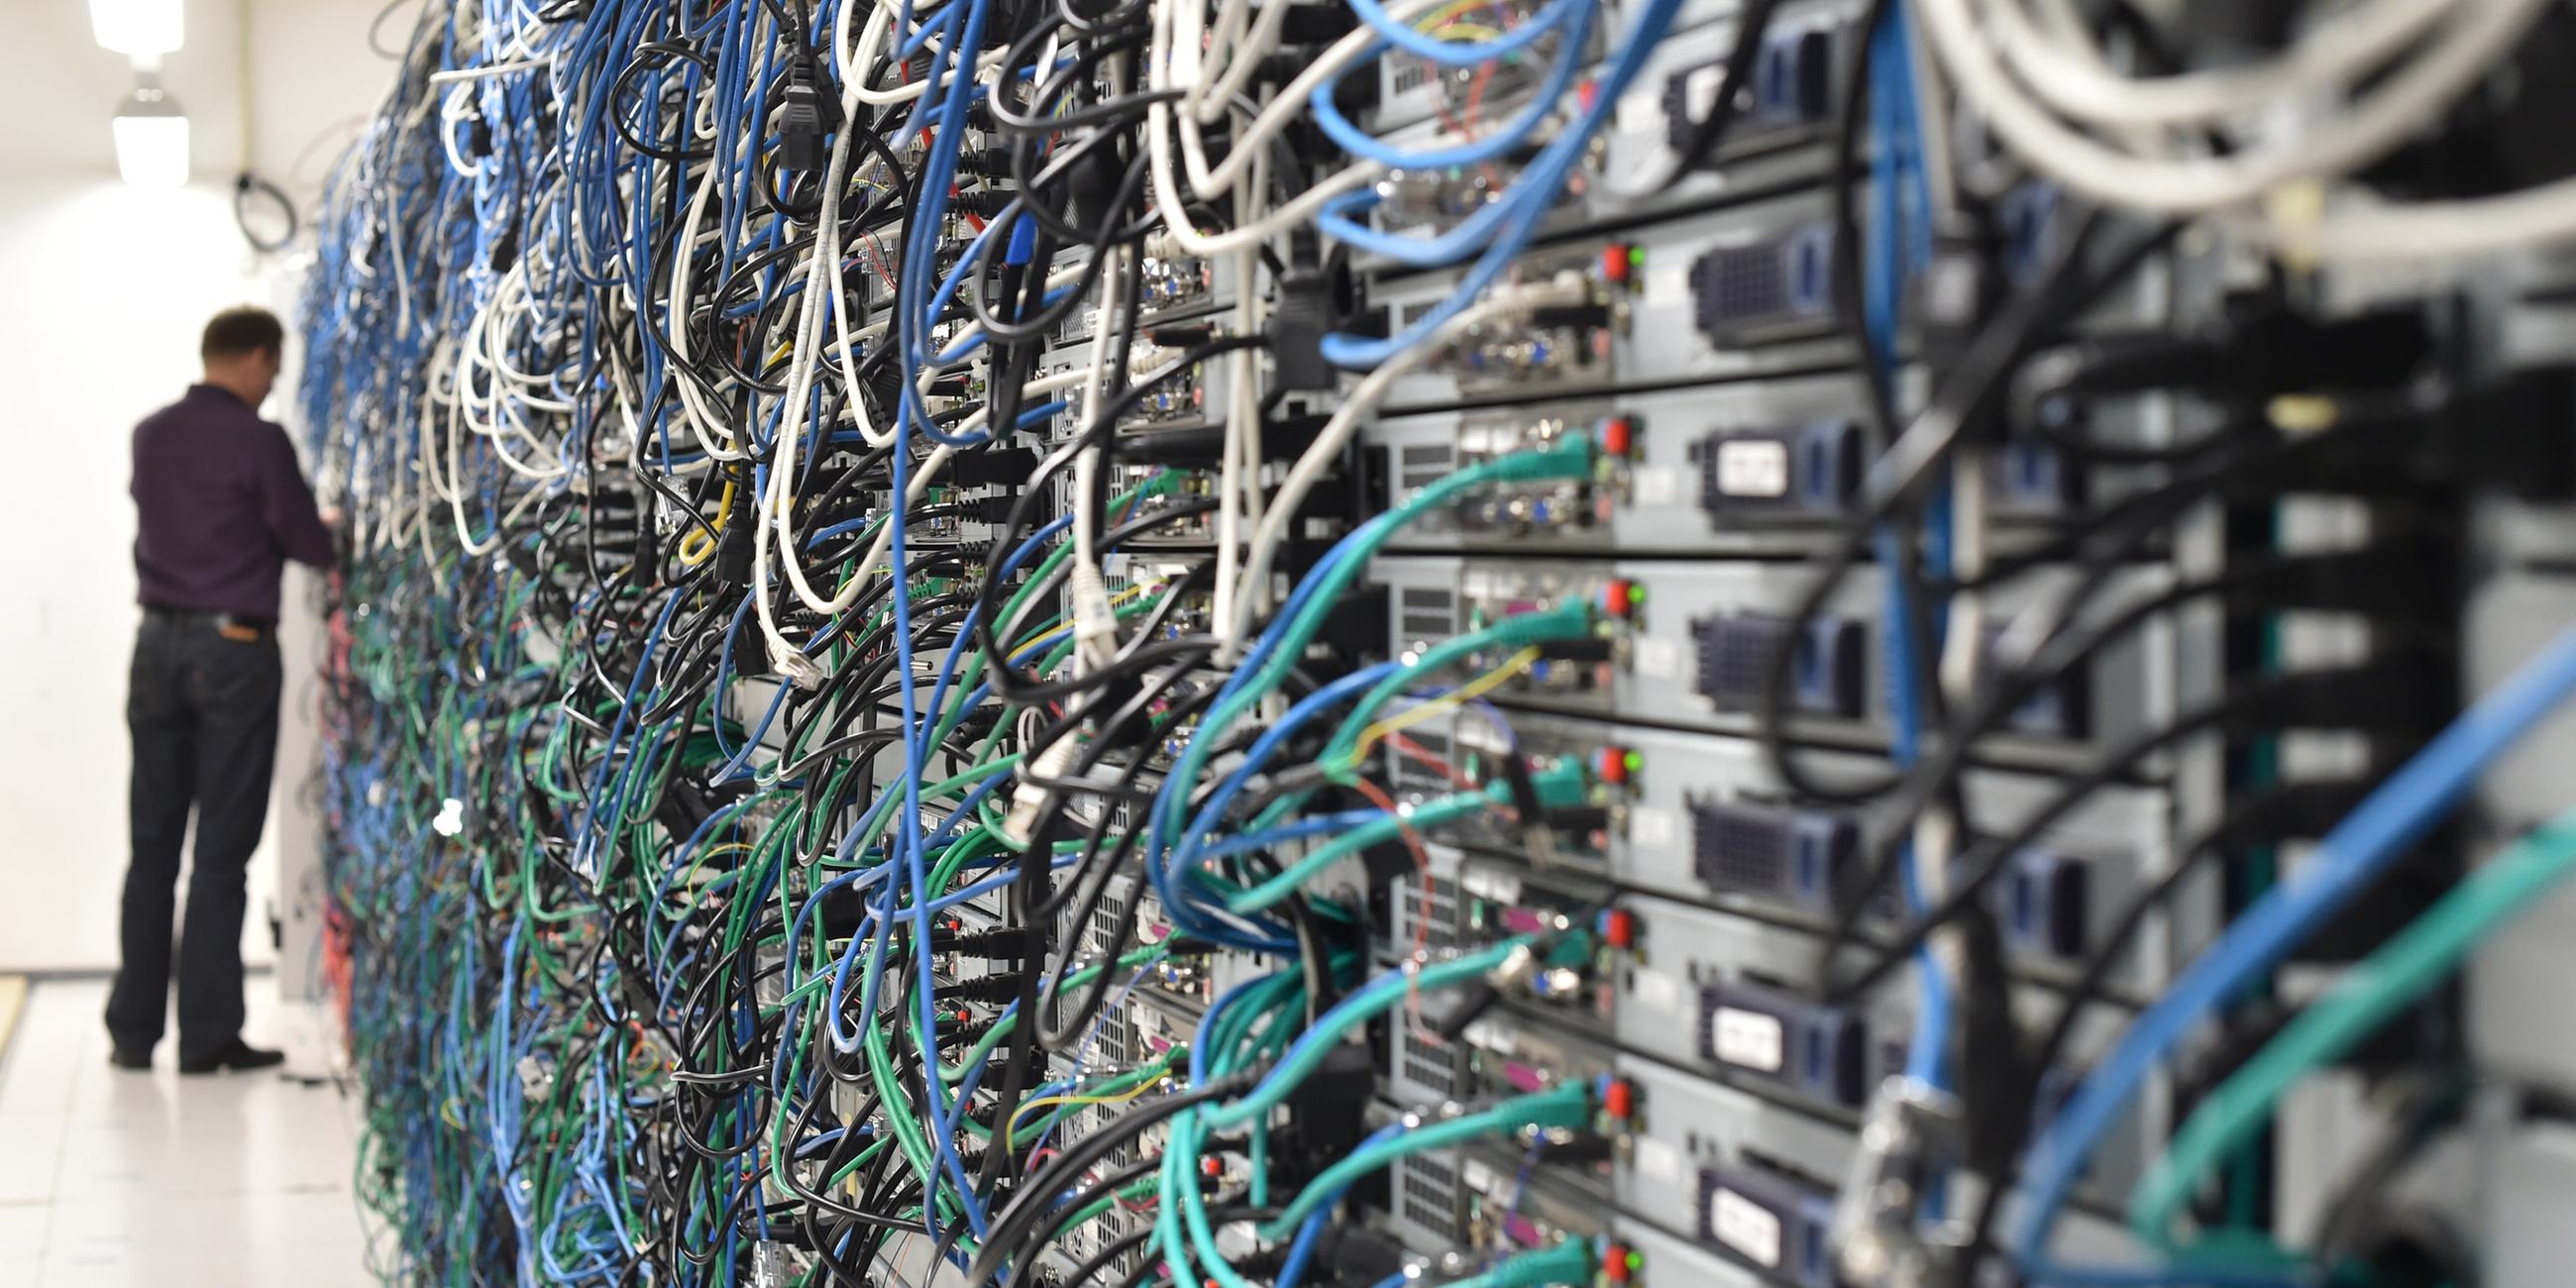 Innenansicht des Serverraums eines Rechenzentrums mit zahlreichen Kabeln und Serverschränken